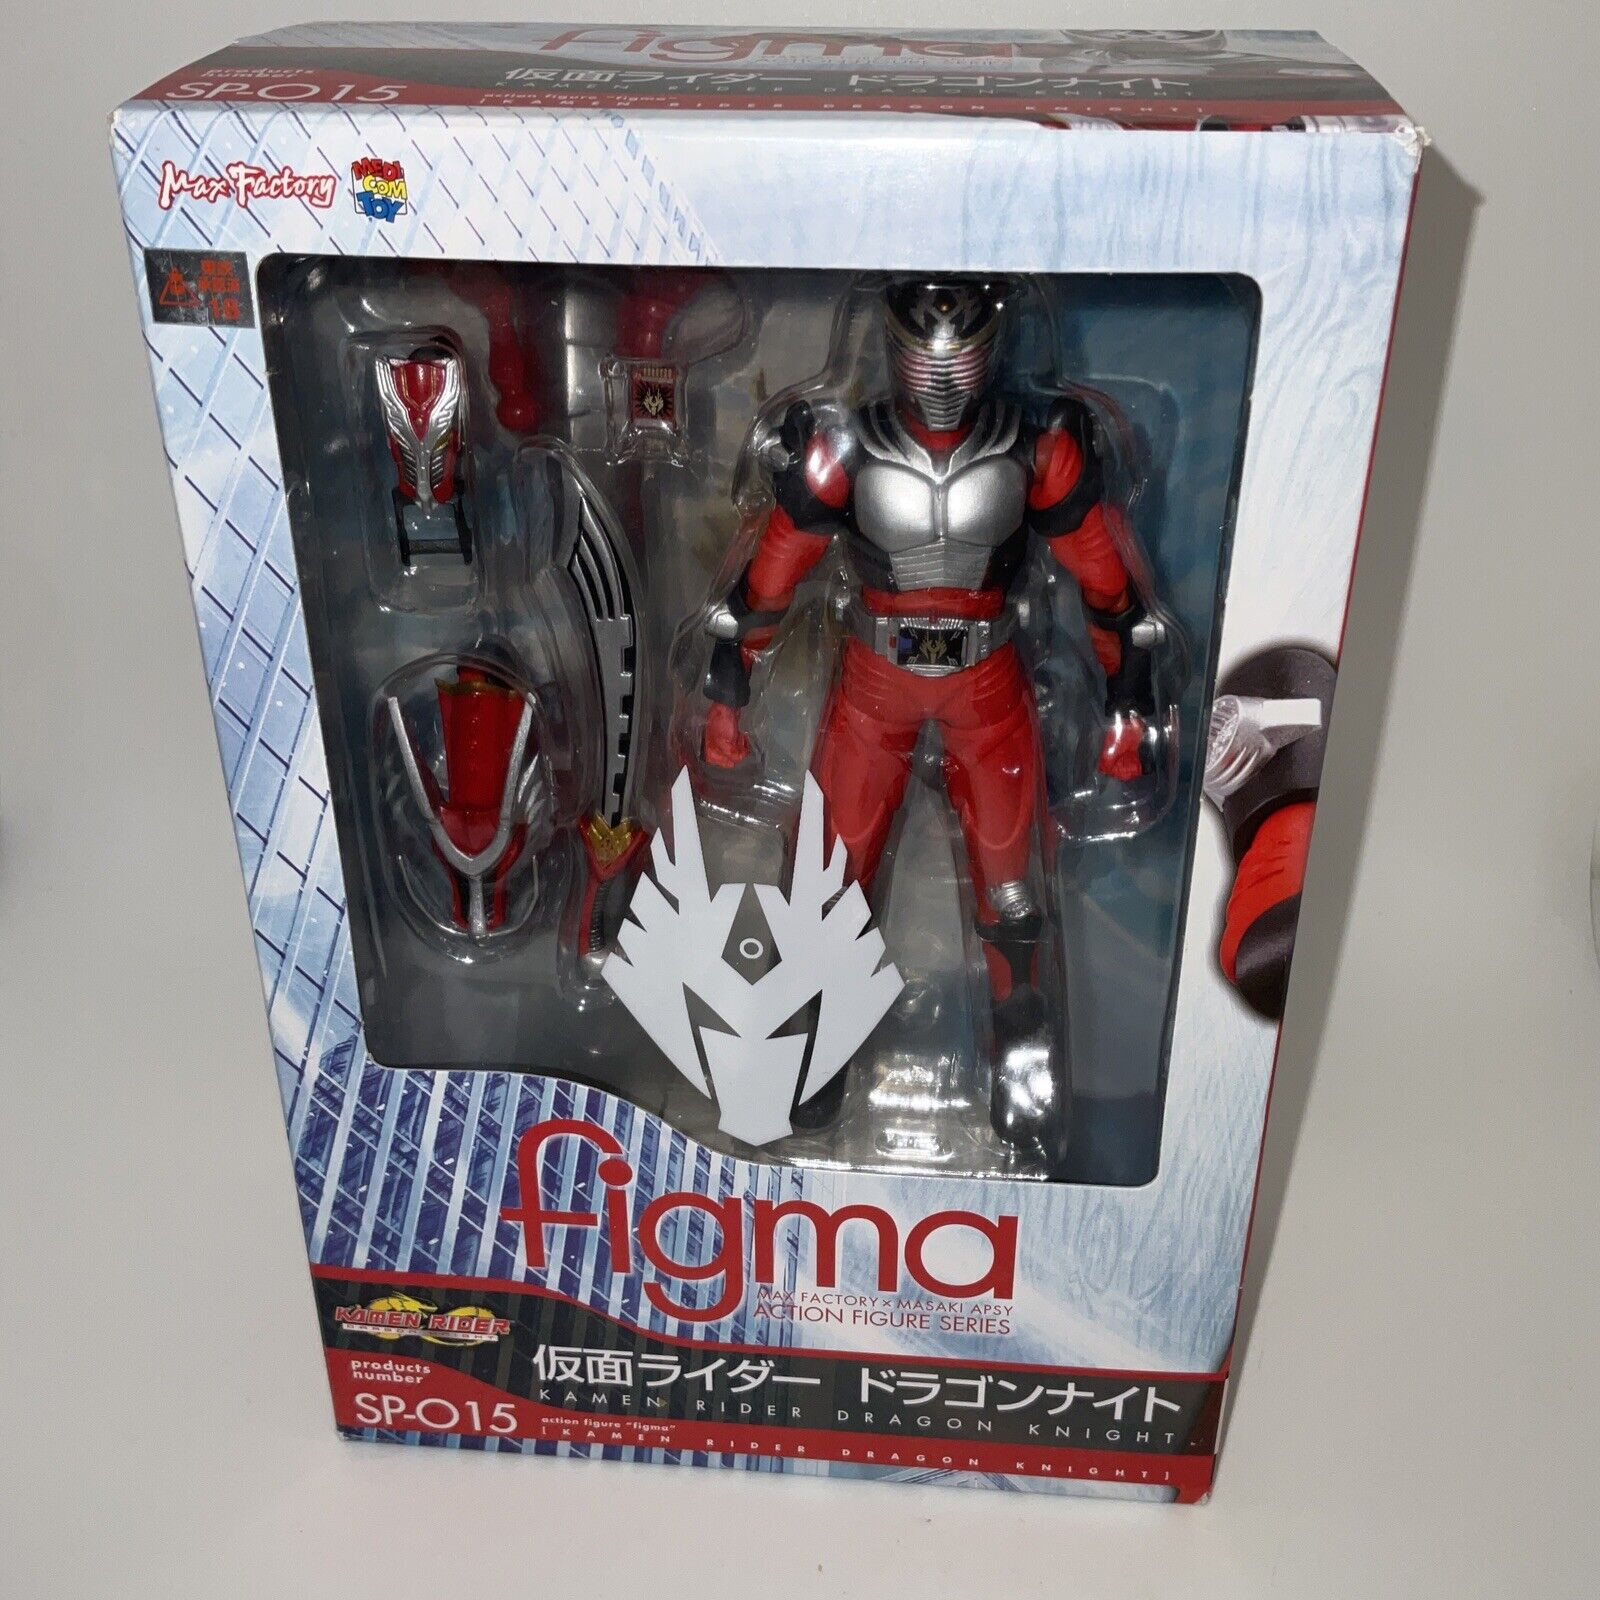 Figma Sp-015 Kamen Rider Dragon Knight New U.S. Seller